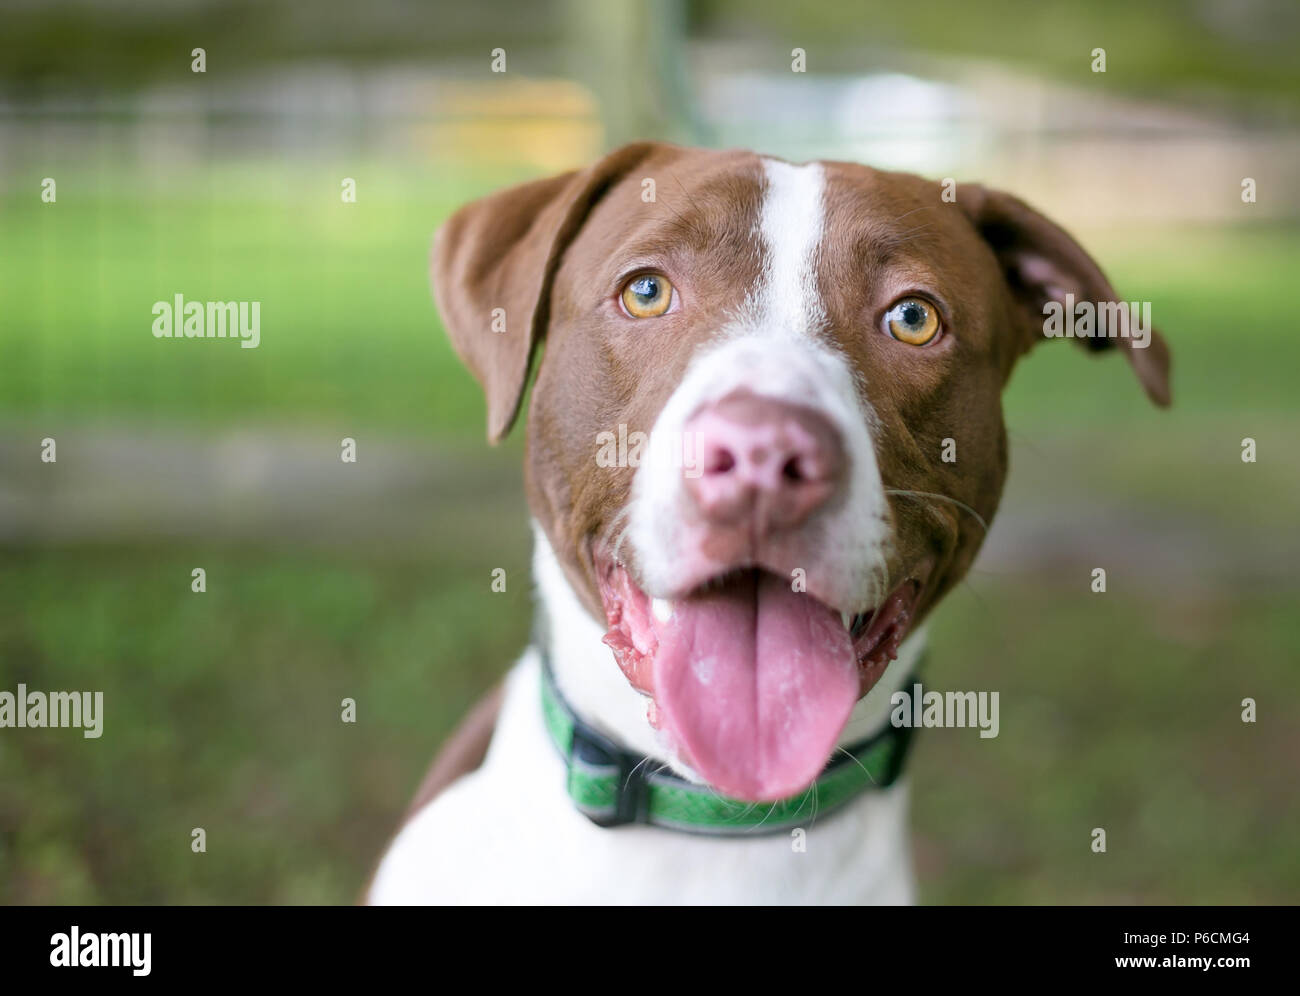 Un rosso e bianco di razza cane indossa un collare verde, ansimando con una felice espressione sulla sua faccia Foto Stock